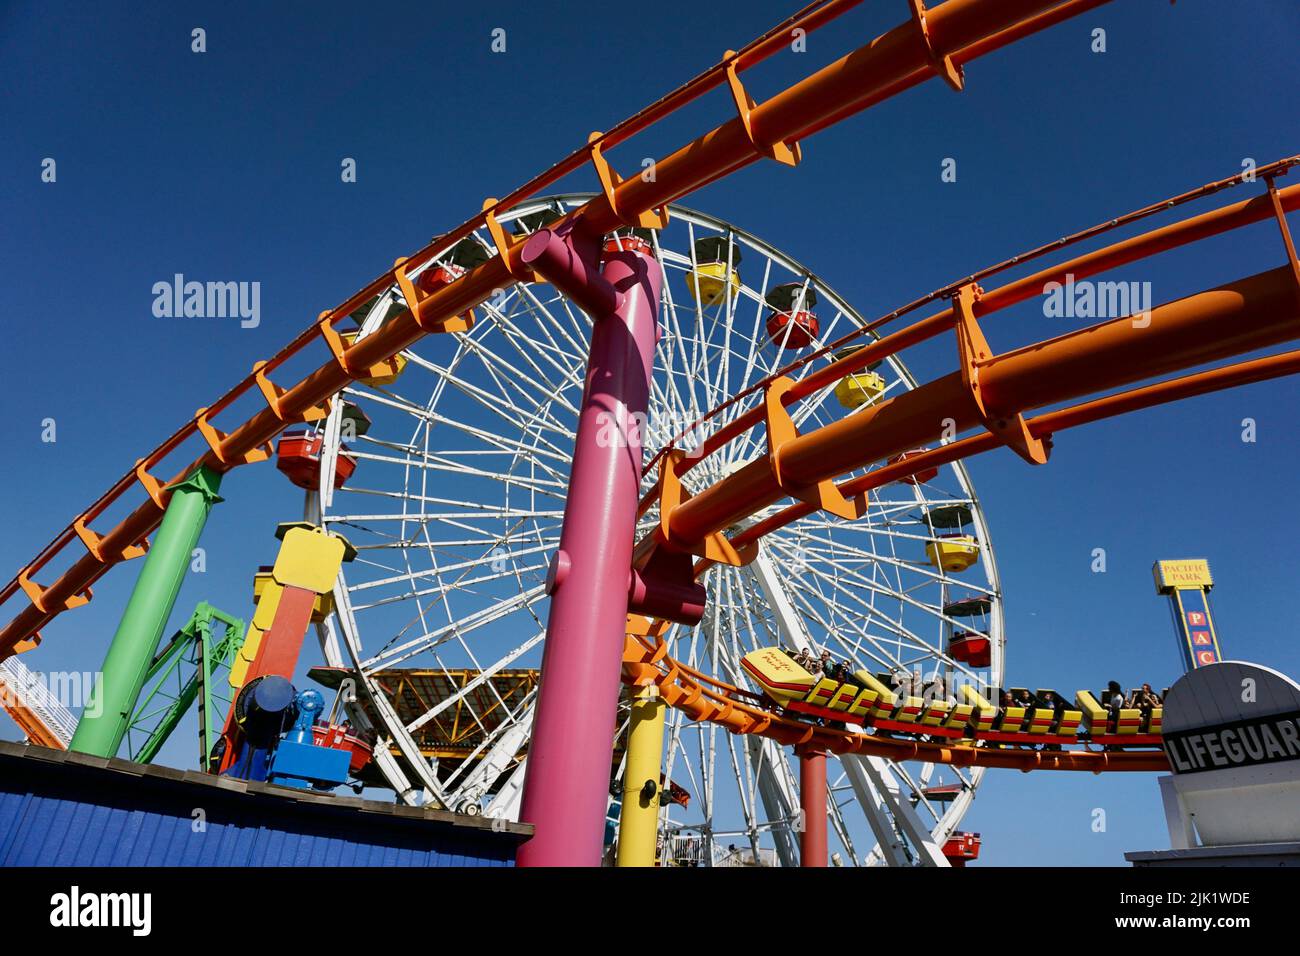 Pacific Park amusement park on the Santa Monica pier. Stock Photo